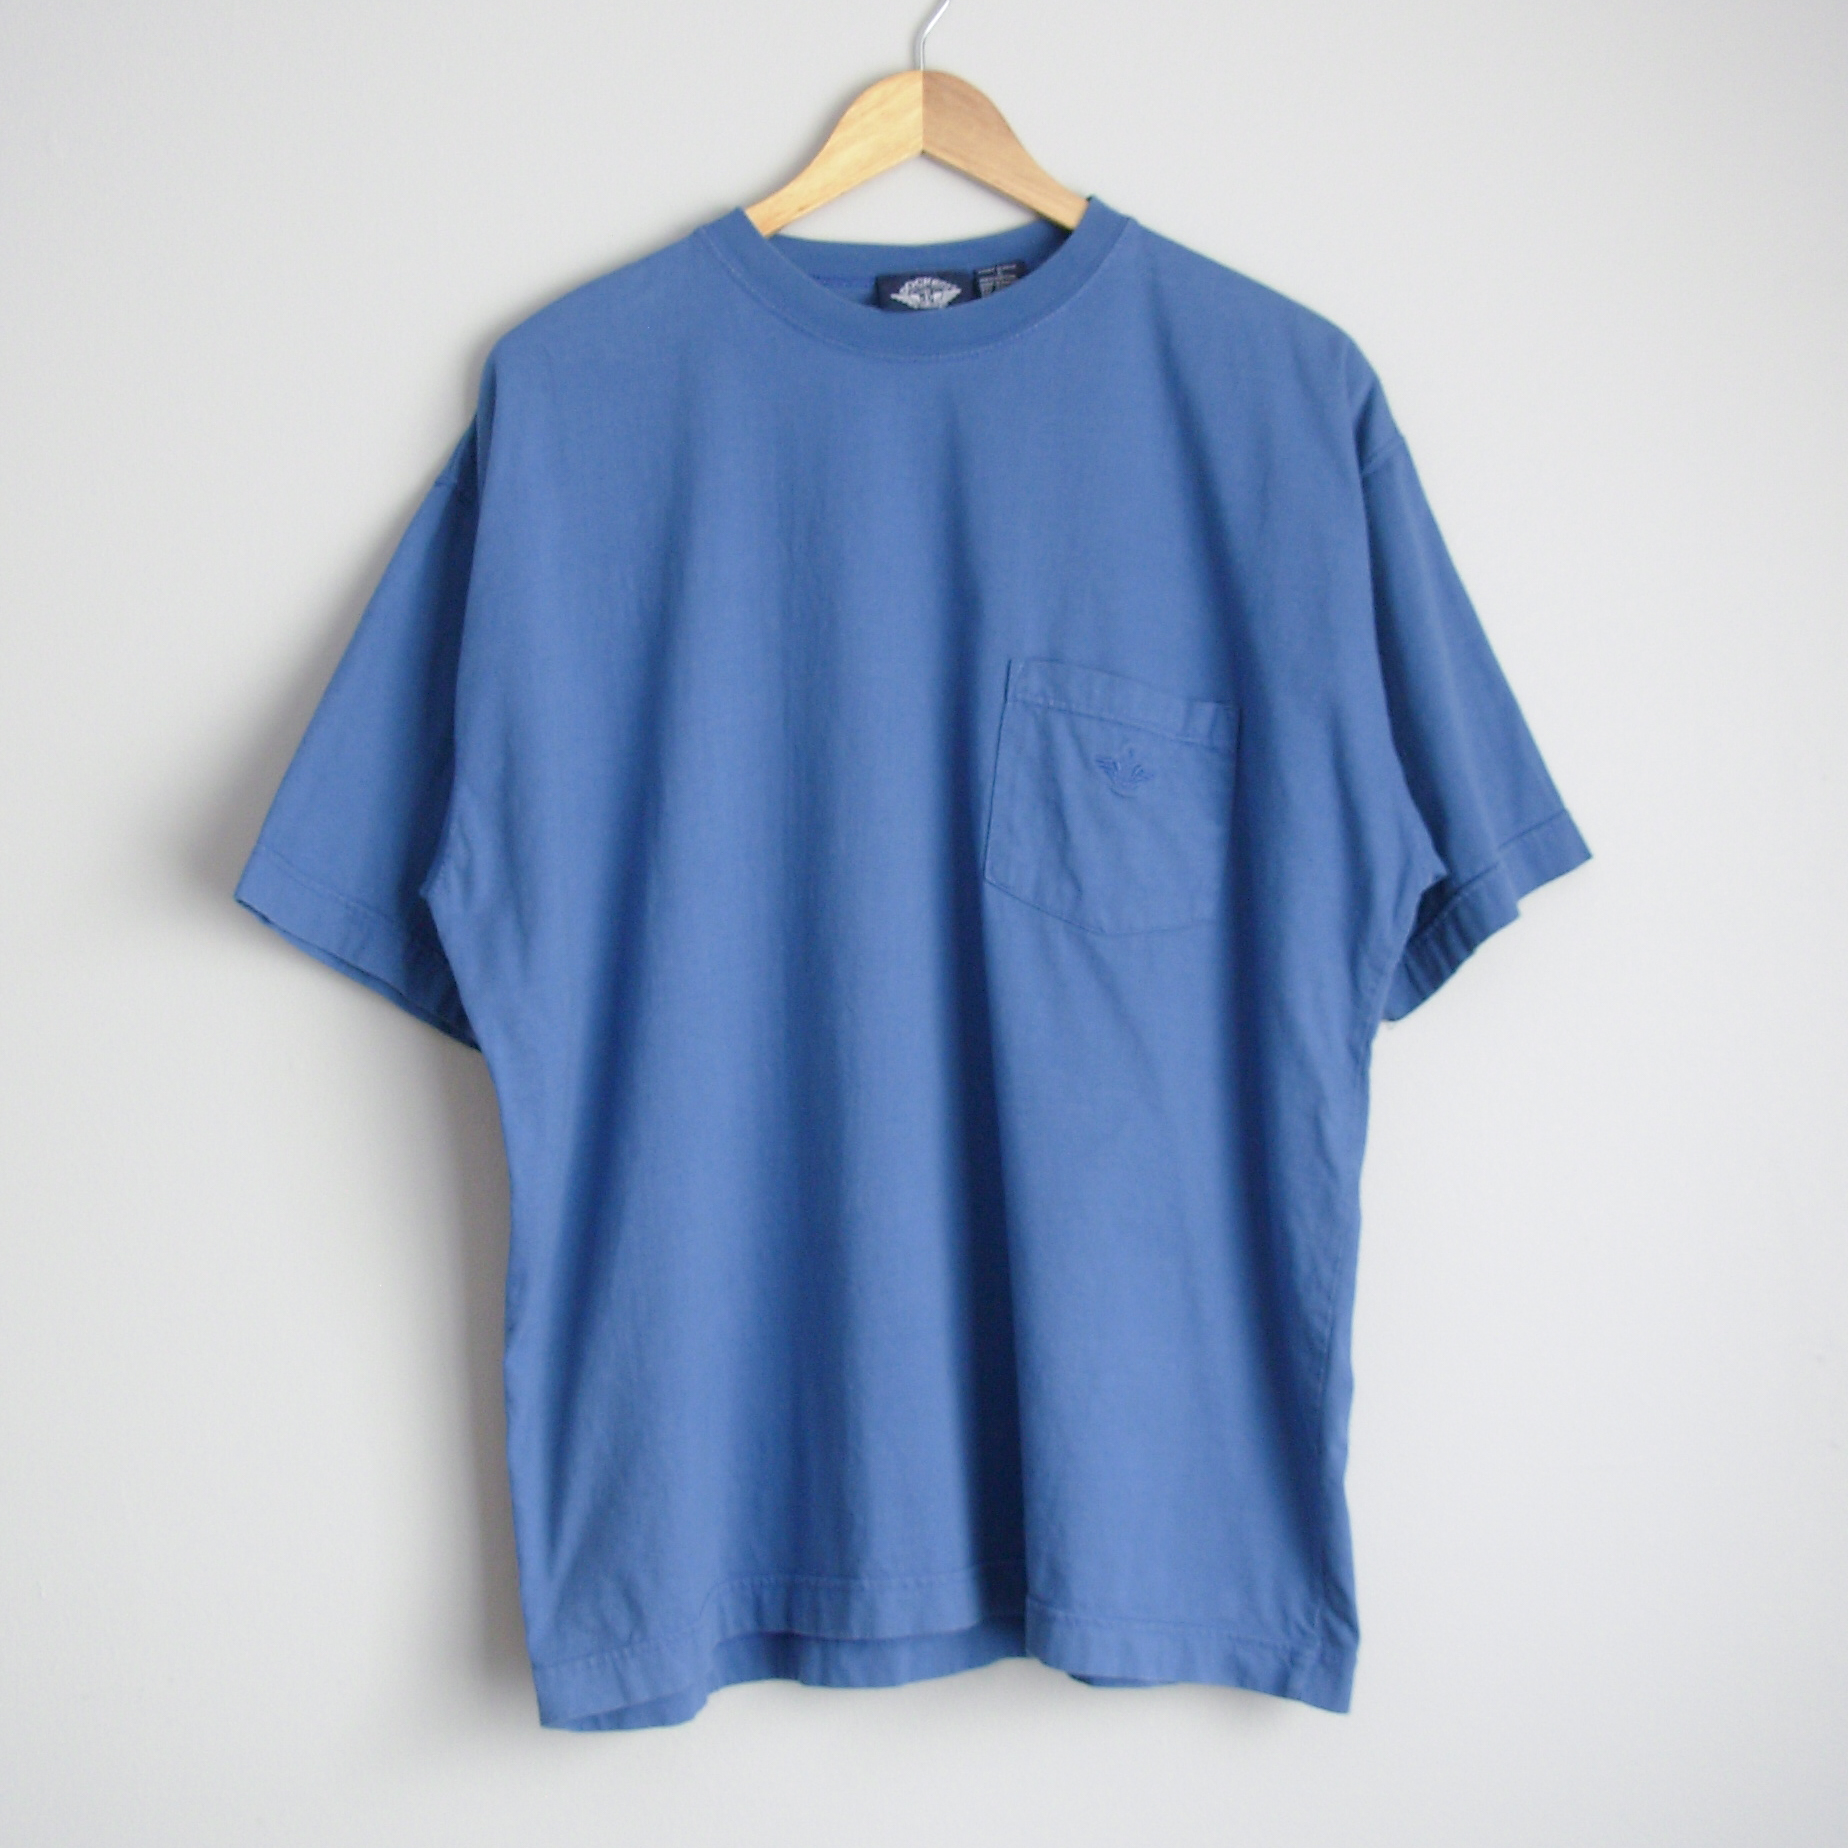 90's blue pocket tee shirt, men's size large | Manor Vintage